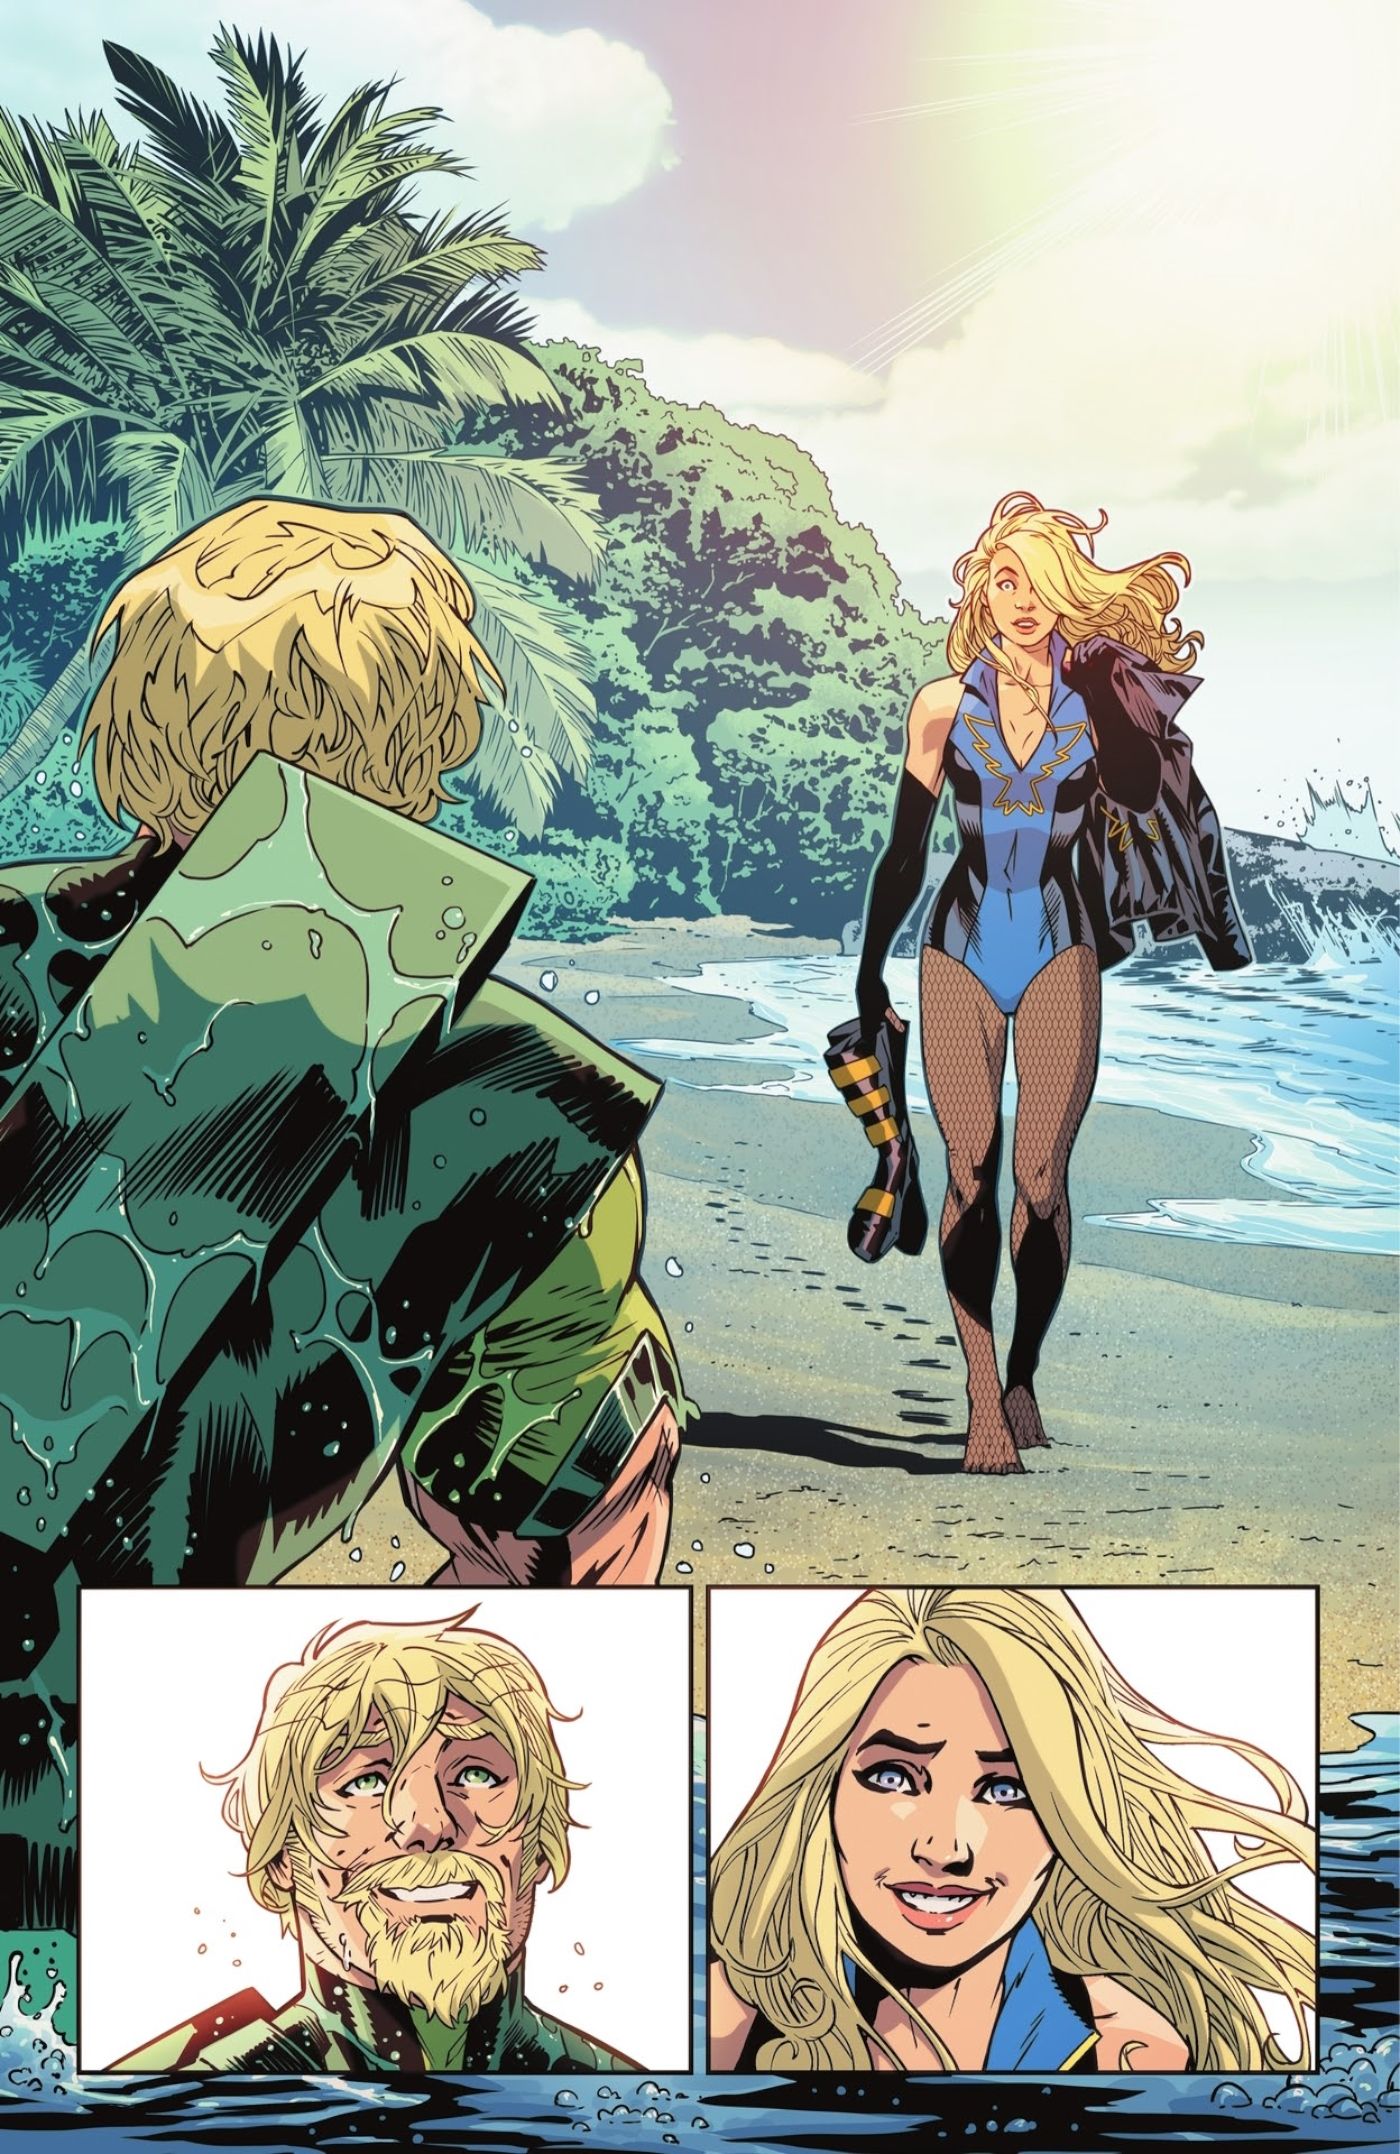 Paneles de cómics: superhéroes disfrazados, Flecha Verde y Canario Negro, se sonríen en una playa.